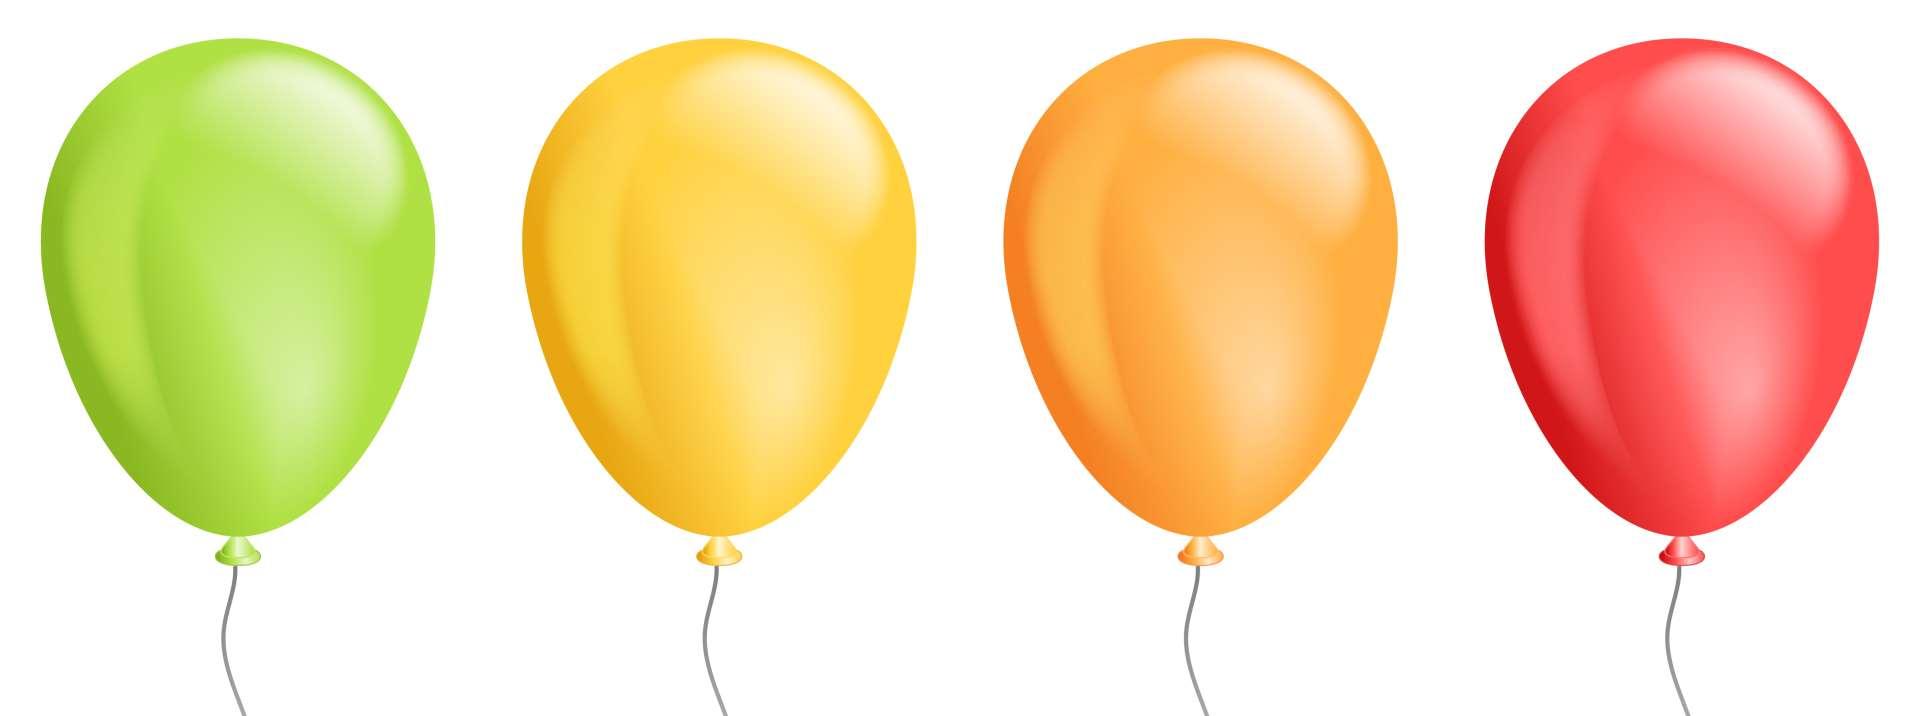 Vektorsatz realistische isolierte bunte Ballons für Schablonen- und Einladungsdekoration auf dem transparenten Hintergrund. Konzept der Geburtstags- und Jubiläumsfeier. Lager Illustration